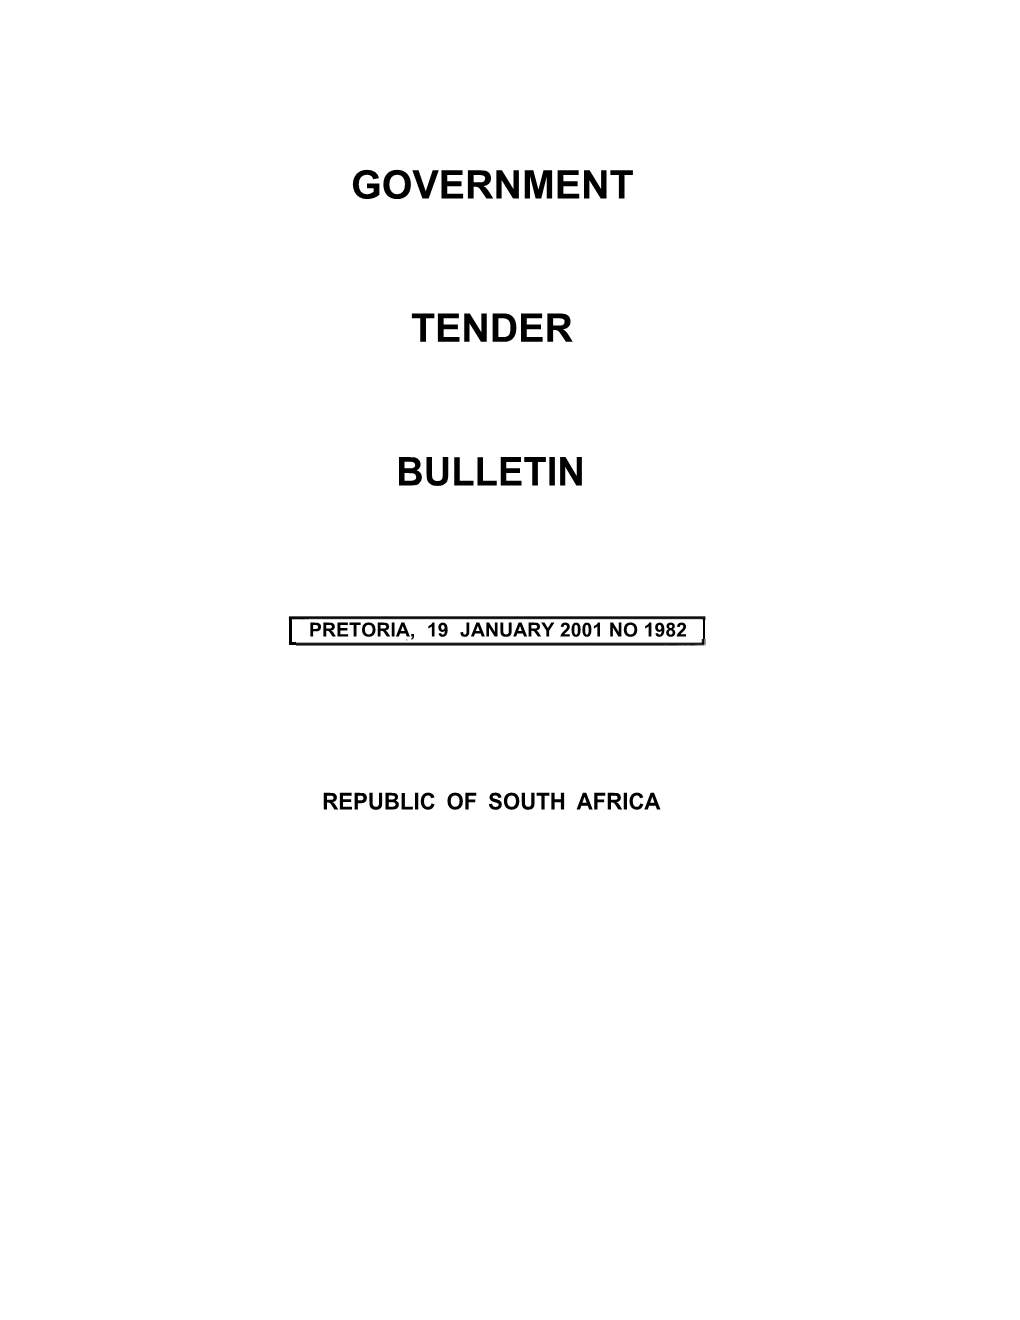 Tender Bulletin 1982